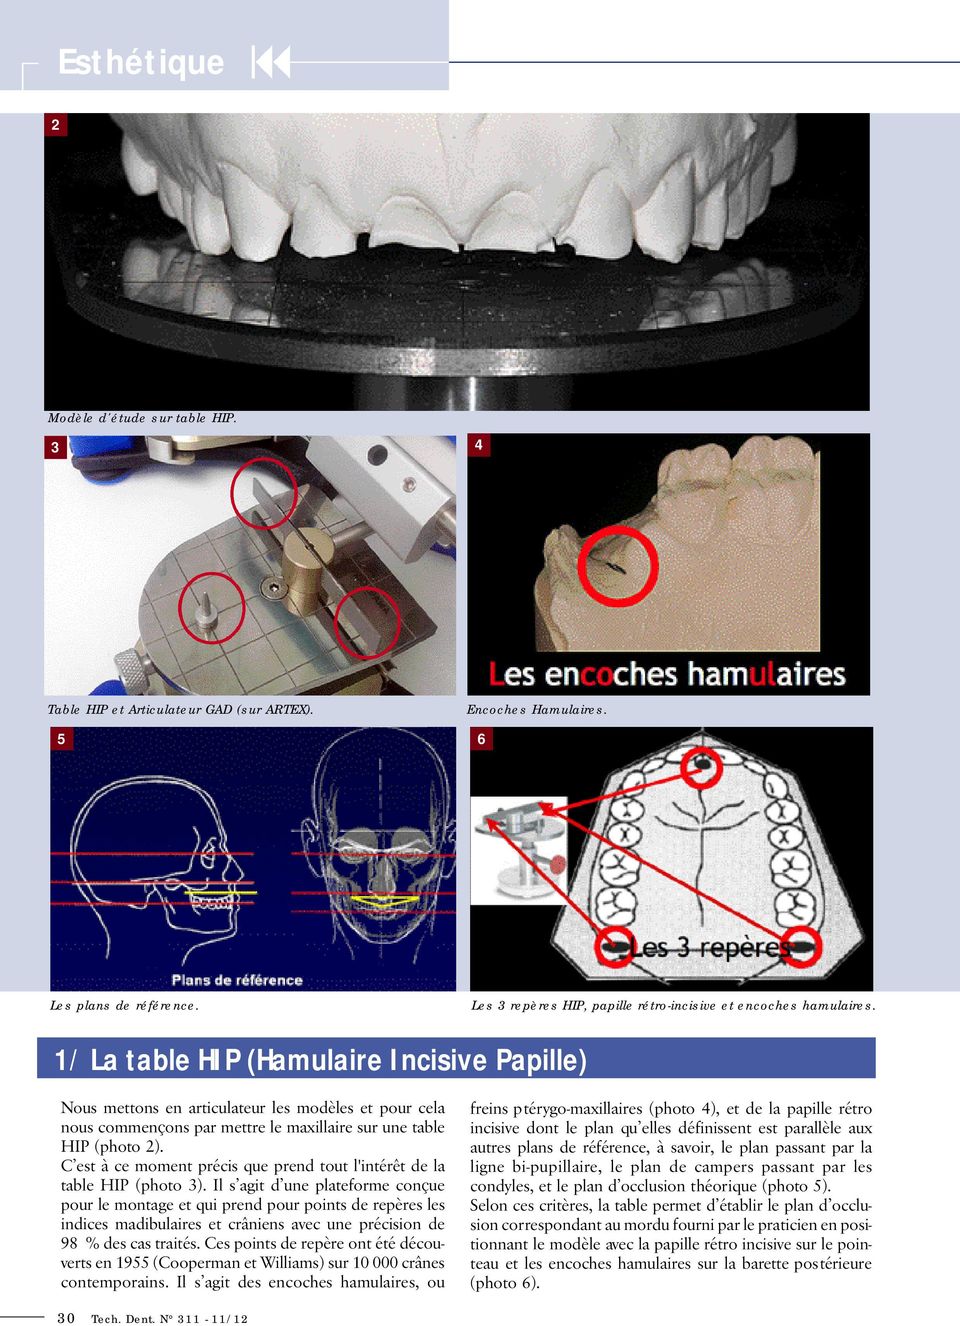 1/ La table HIP (Hamulaire Incisive Papille) Nous mettons en articulateur les modèles et pour cela nous commençons par mettre le maxillaire sur une table HIP (photo 2).